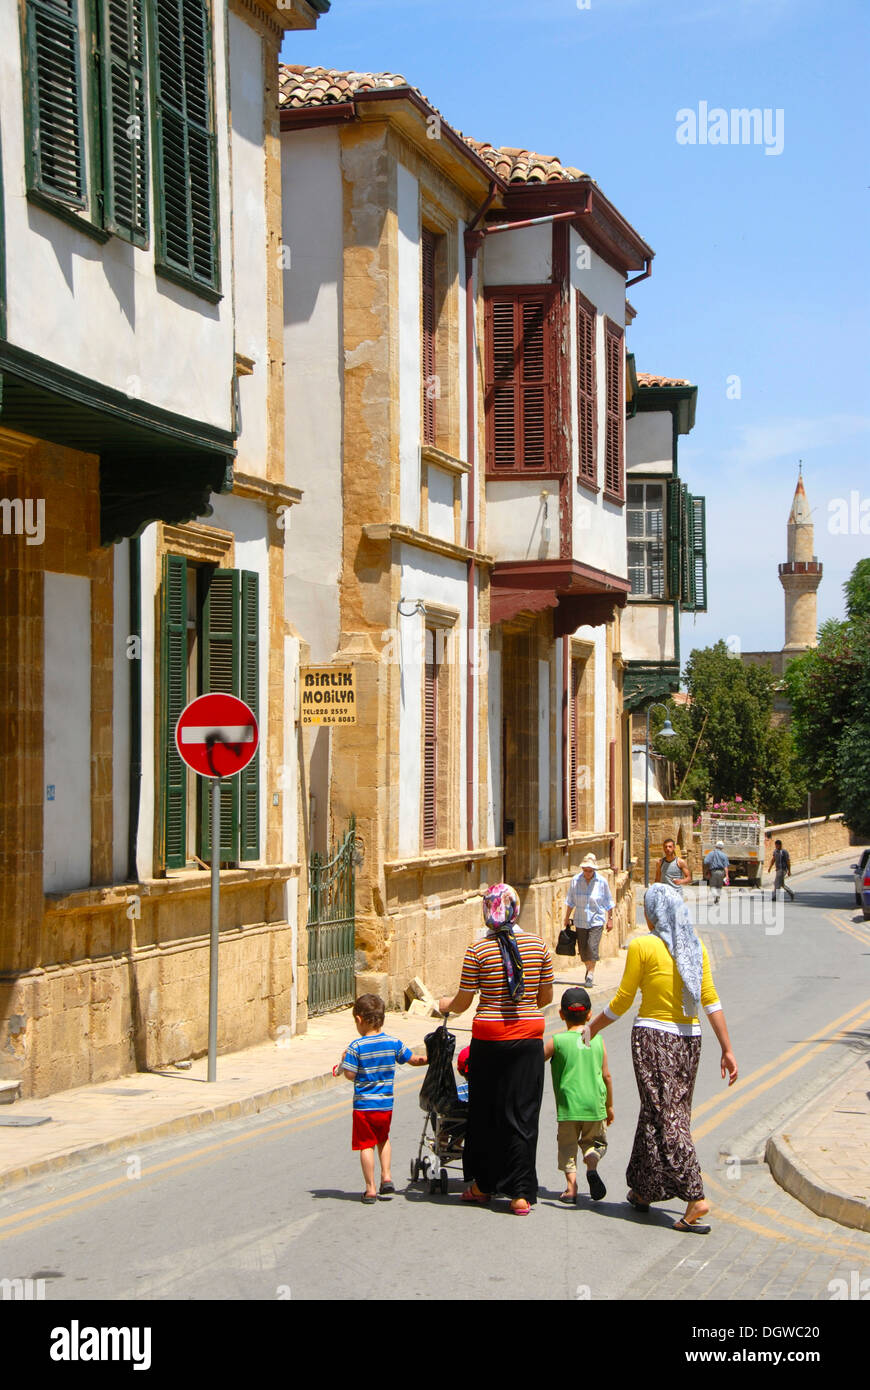 L'architecture turque historique avec fenêtres en baie, ruelle du centre-ville historique avec un minaret, sur la famille turque Banque D'Images